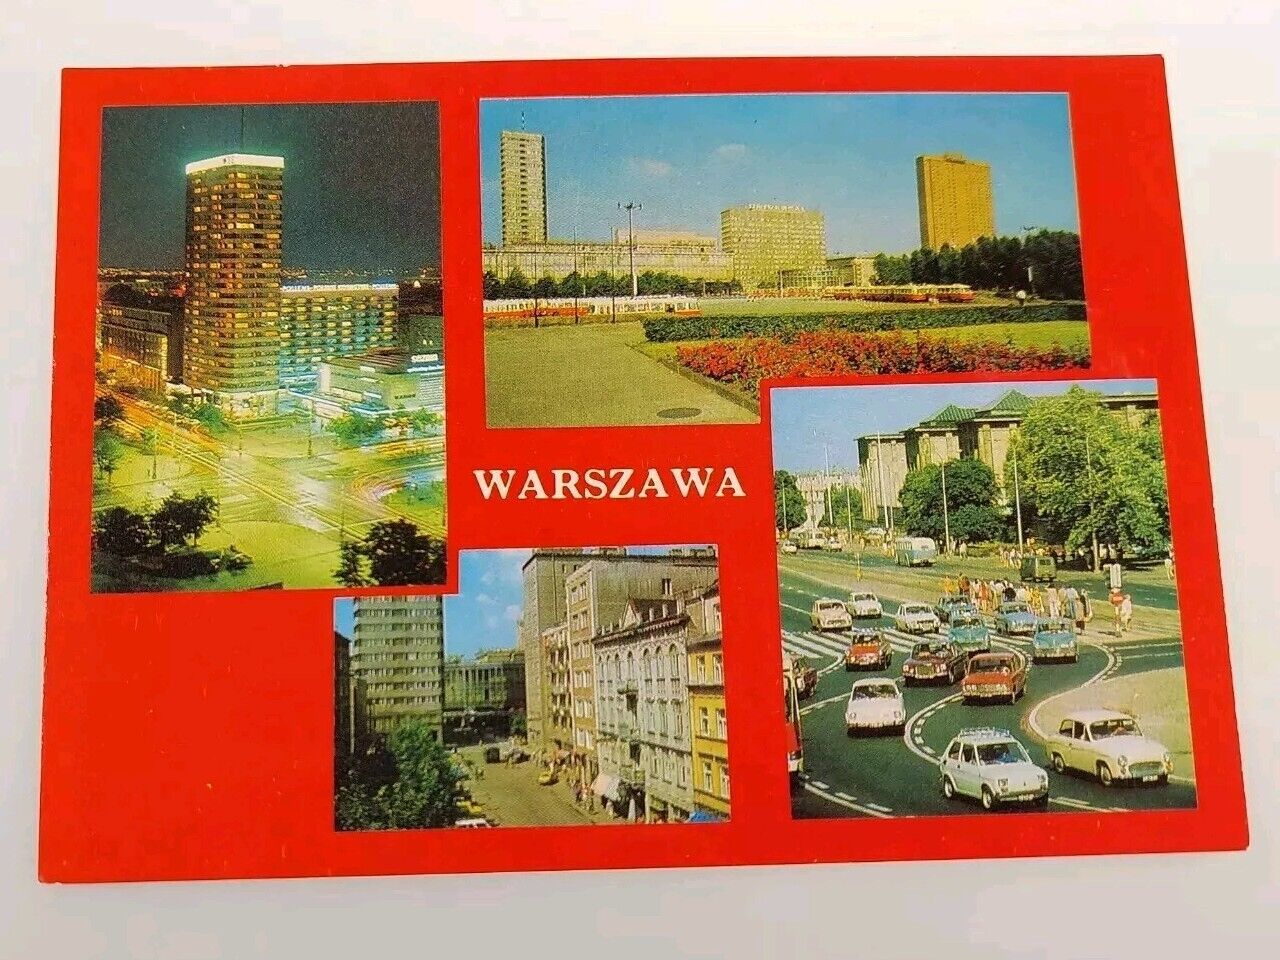 Warszawa (Warsaw Poland) 4 Views Postcard 2